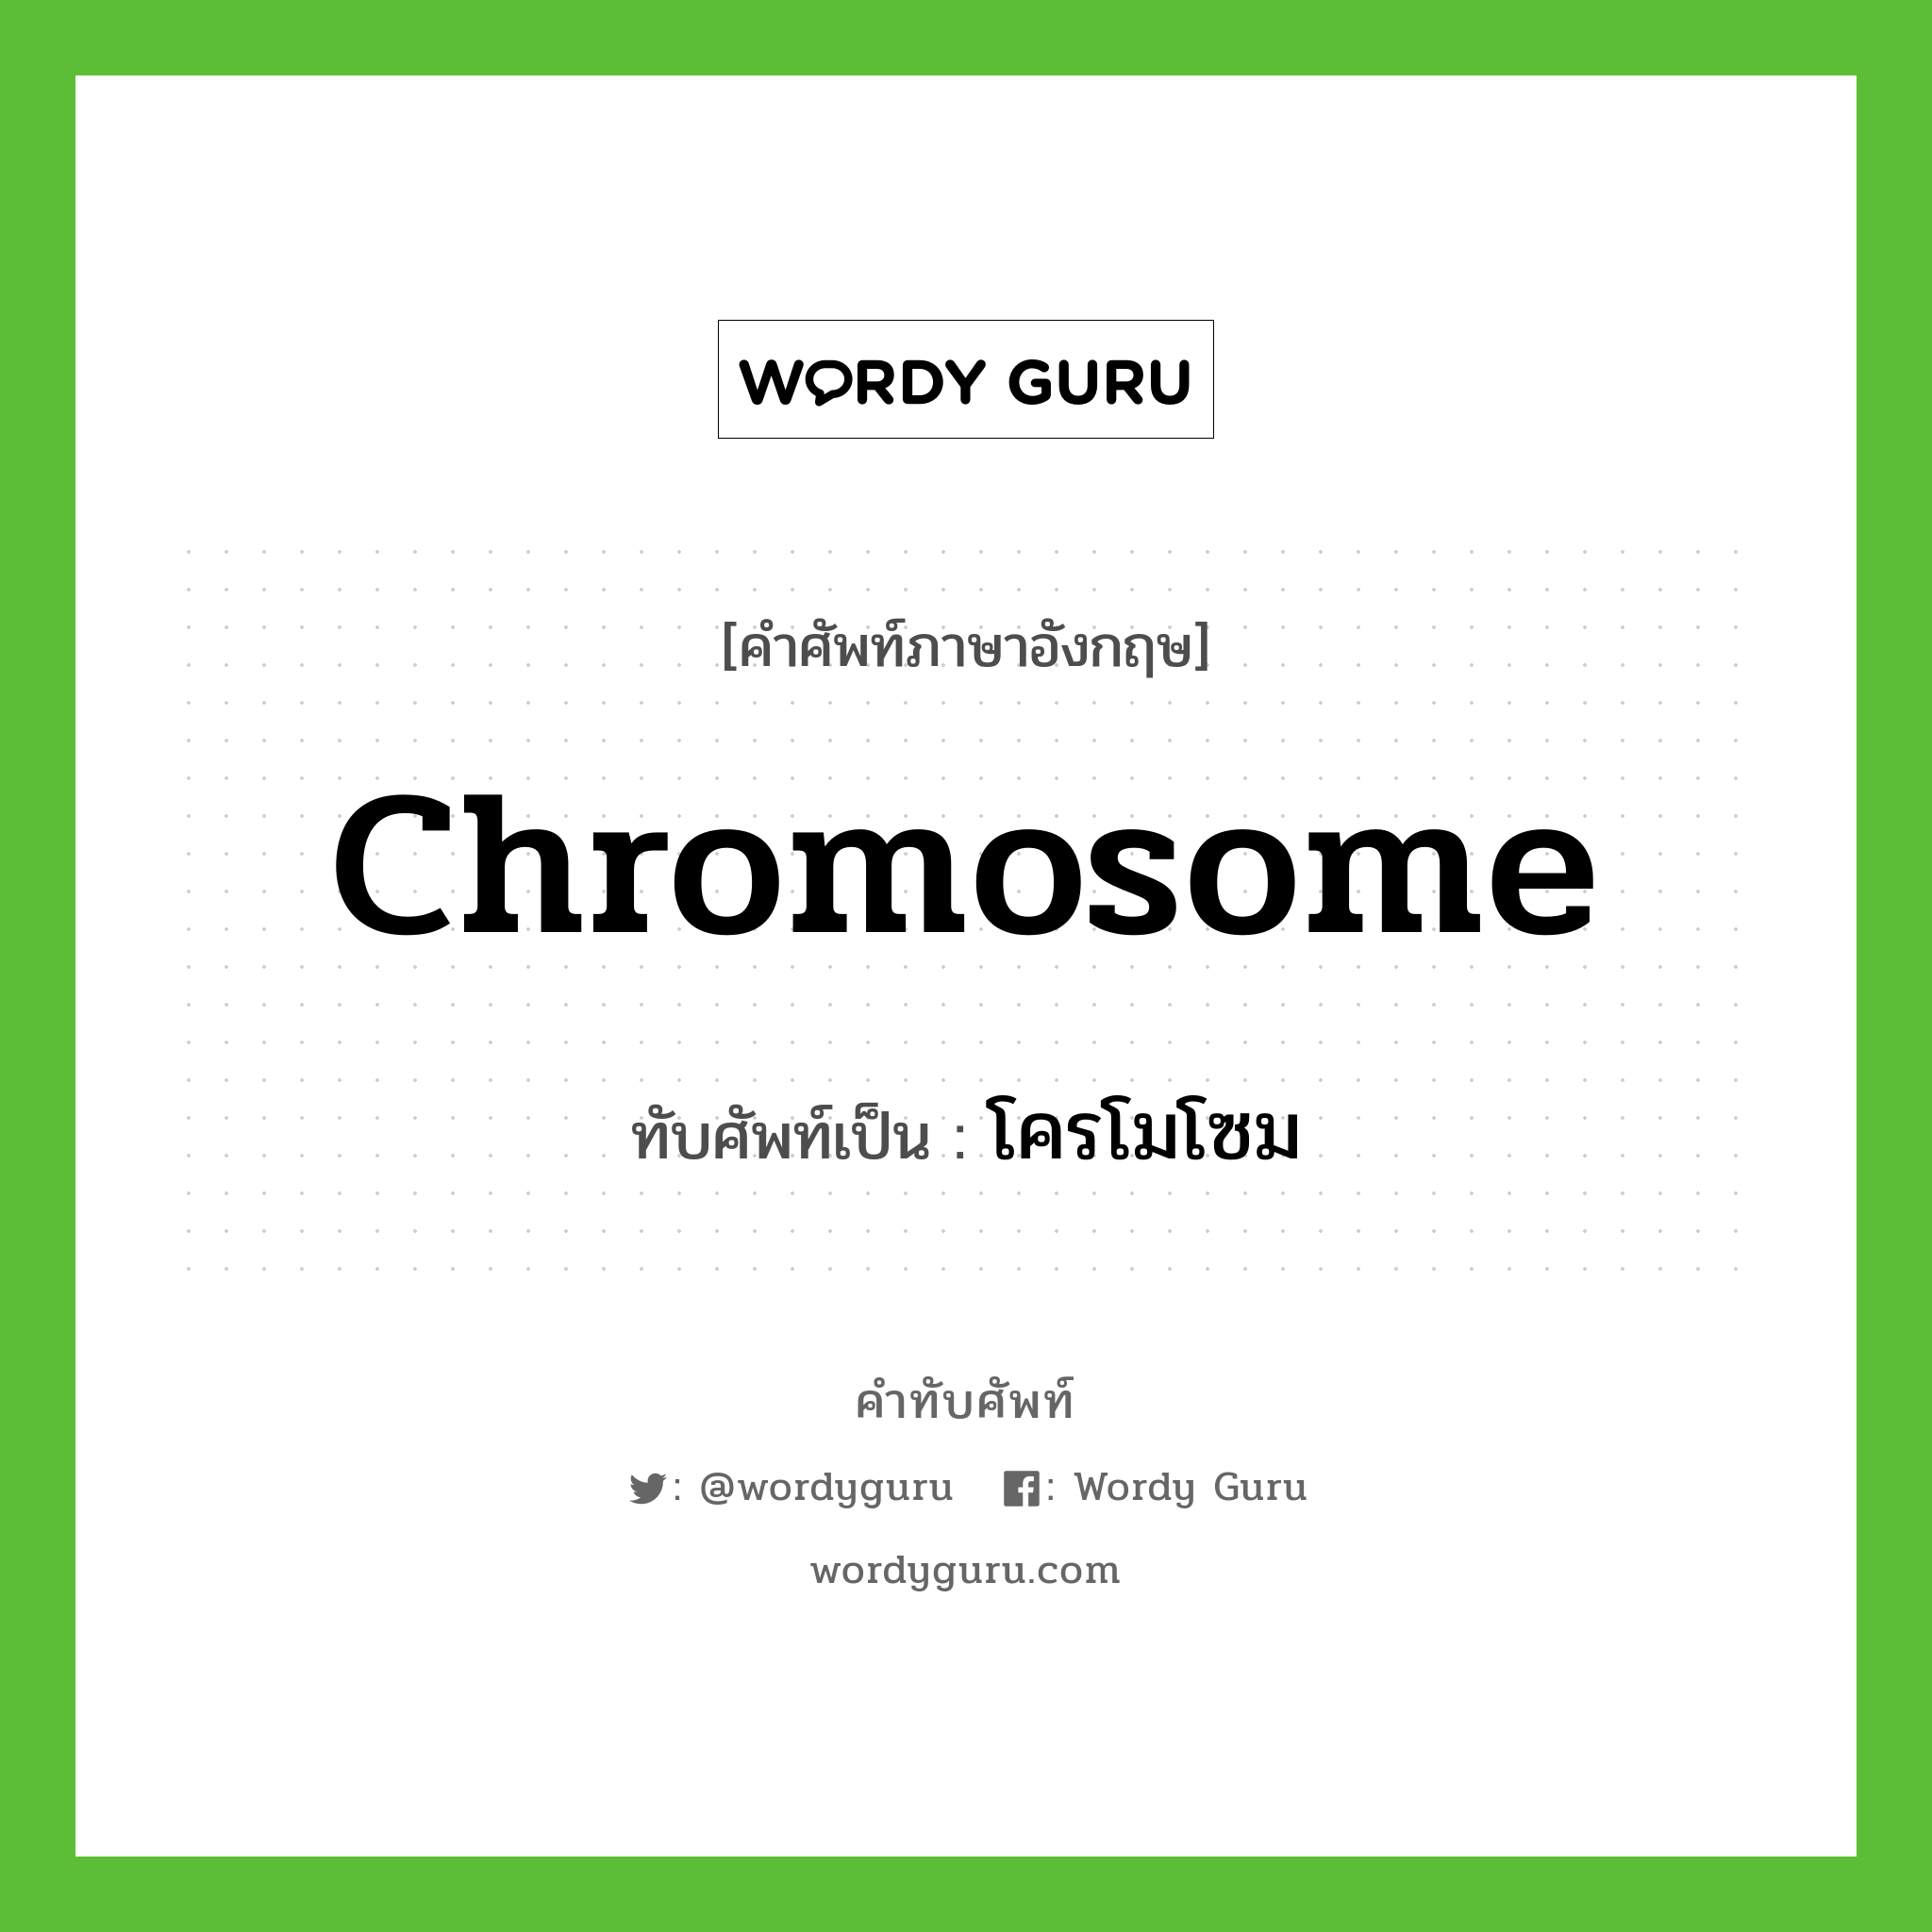 chromosome เขียนเป็นคำไทยว่าอะไร?, คำศัพท์ภาษาอังกฤษ chromosome ทับศัพท์เป็น โครโมโซม